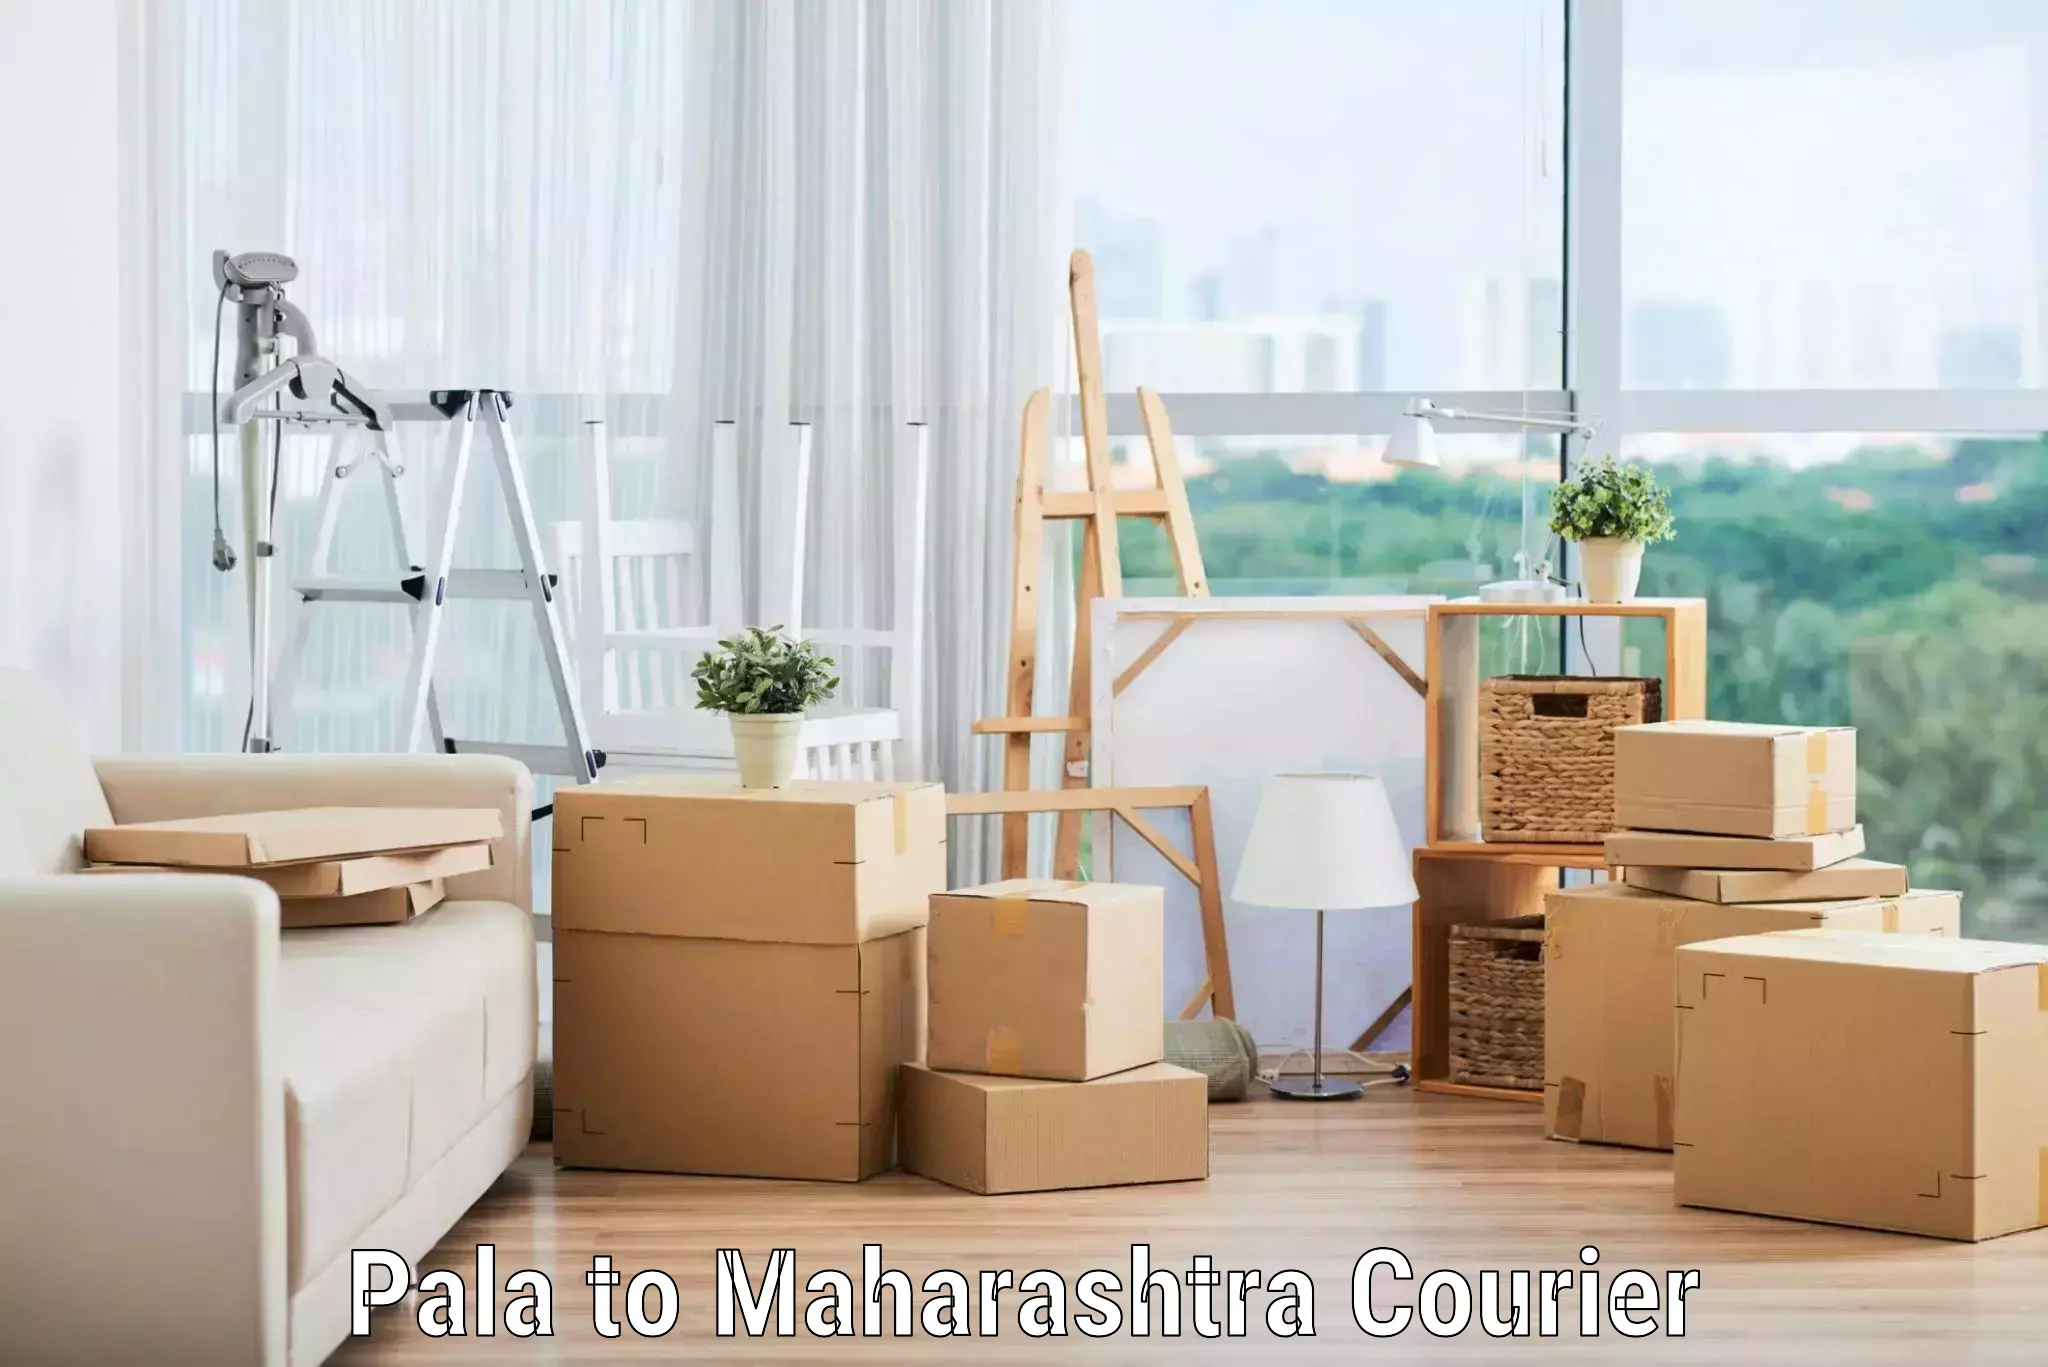 Full-service movers Pala to Maharashtra